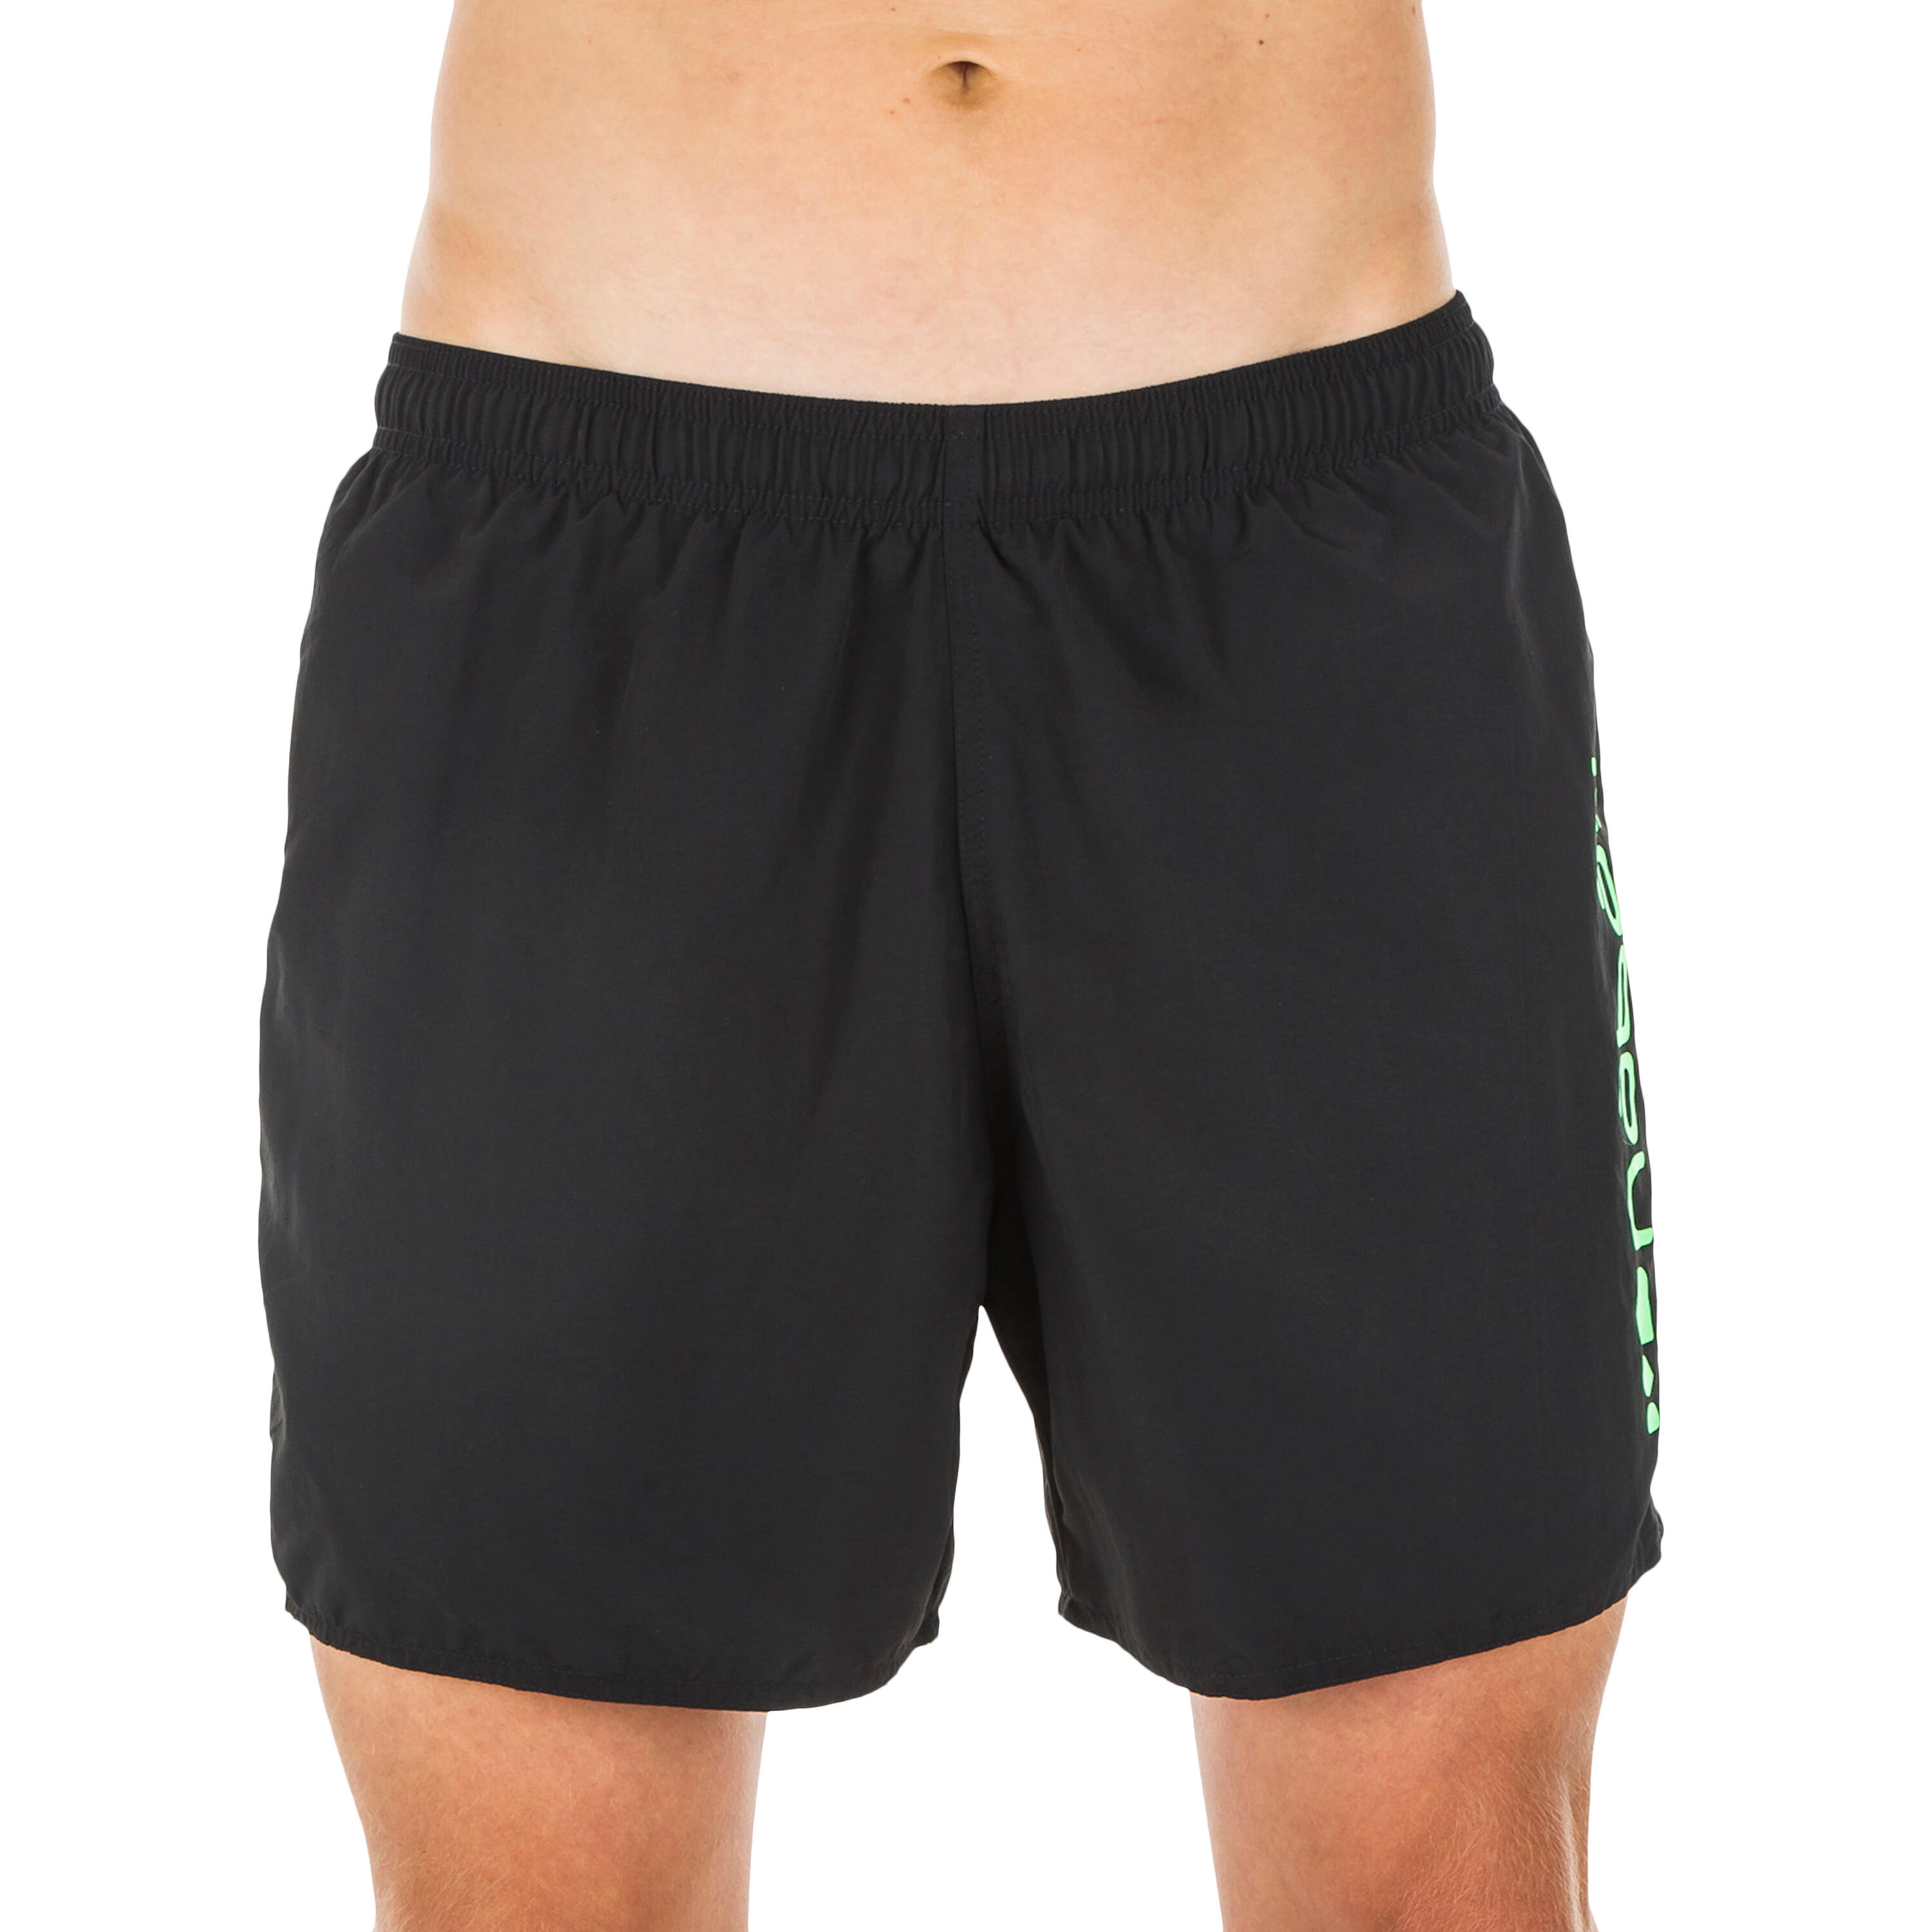 Homme Vêtements Shorts Shorts casual Maillots de bain Les Hommes pour homme en coloris Noir 